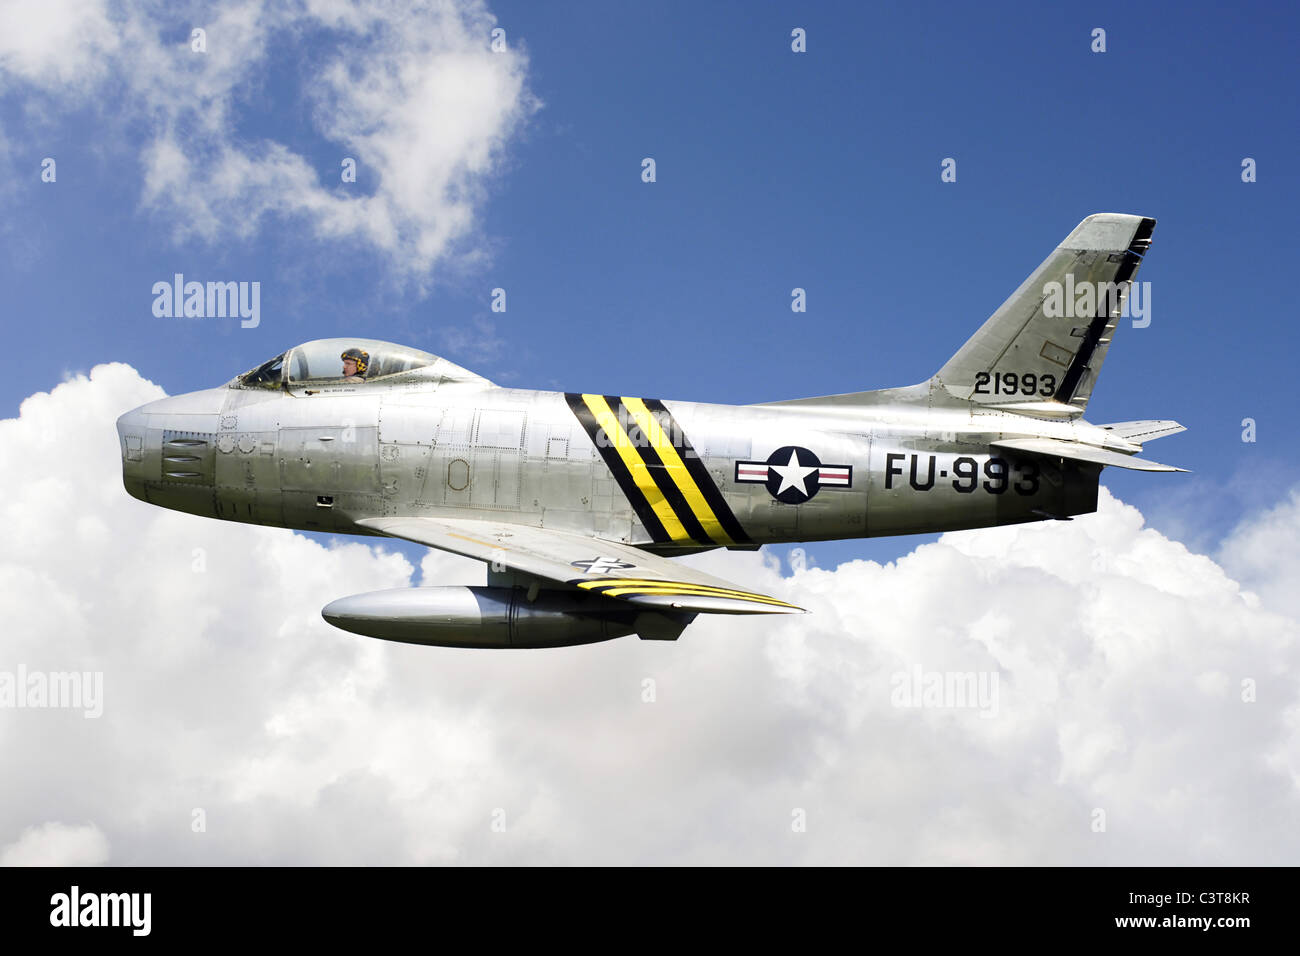 Korean war era aircraft hi-res stock photography and images - Alamy